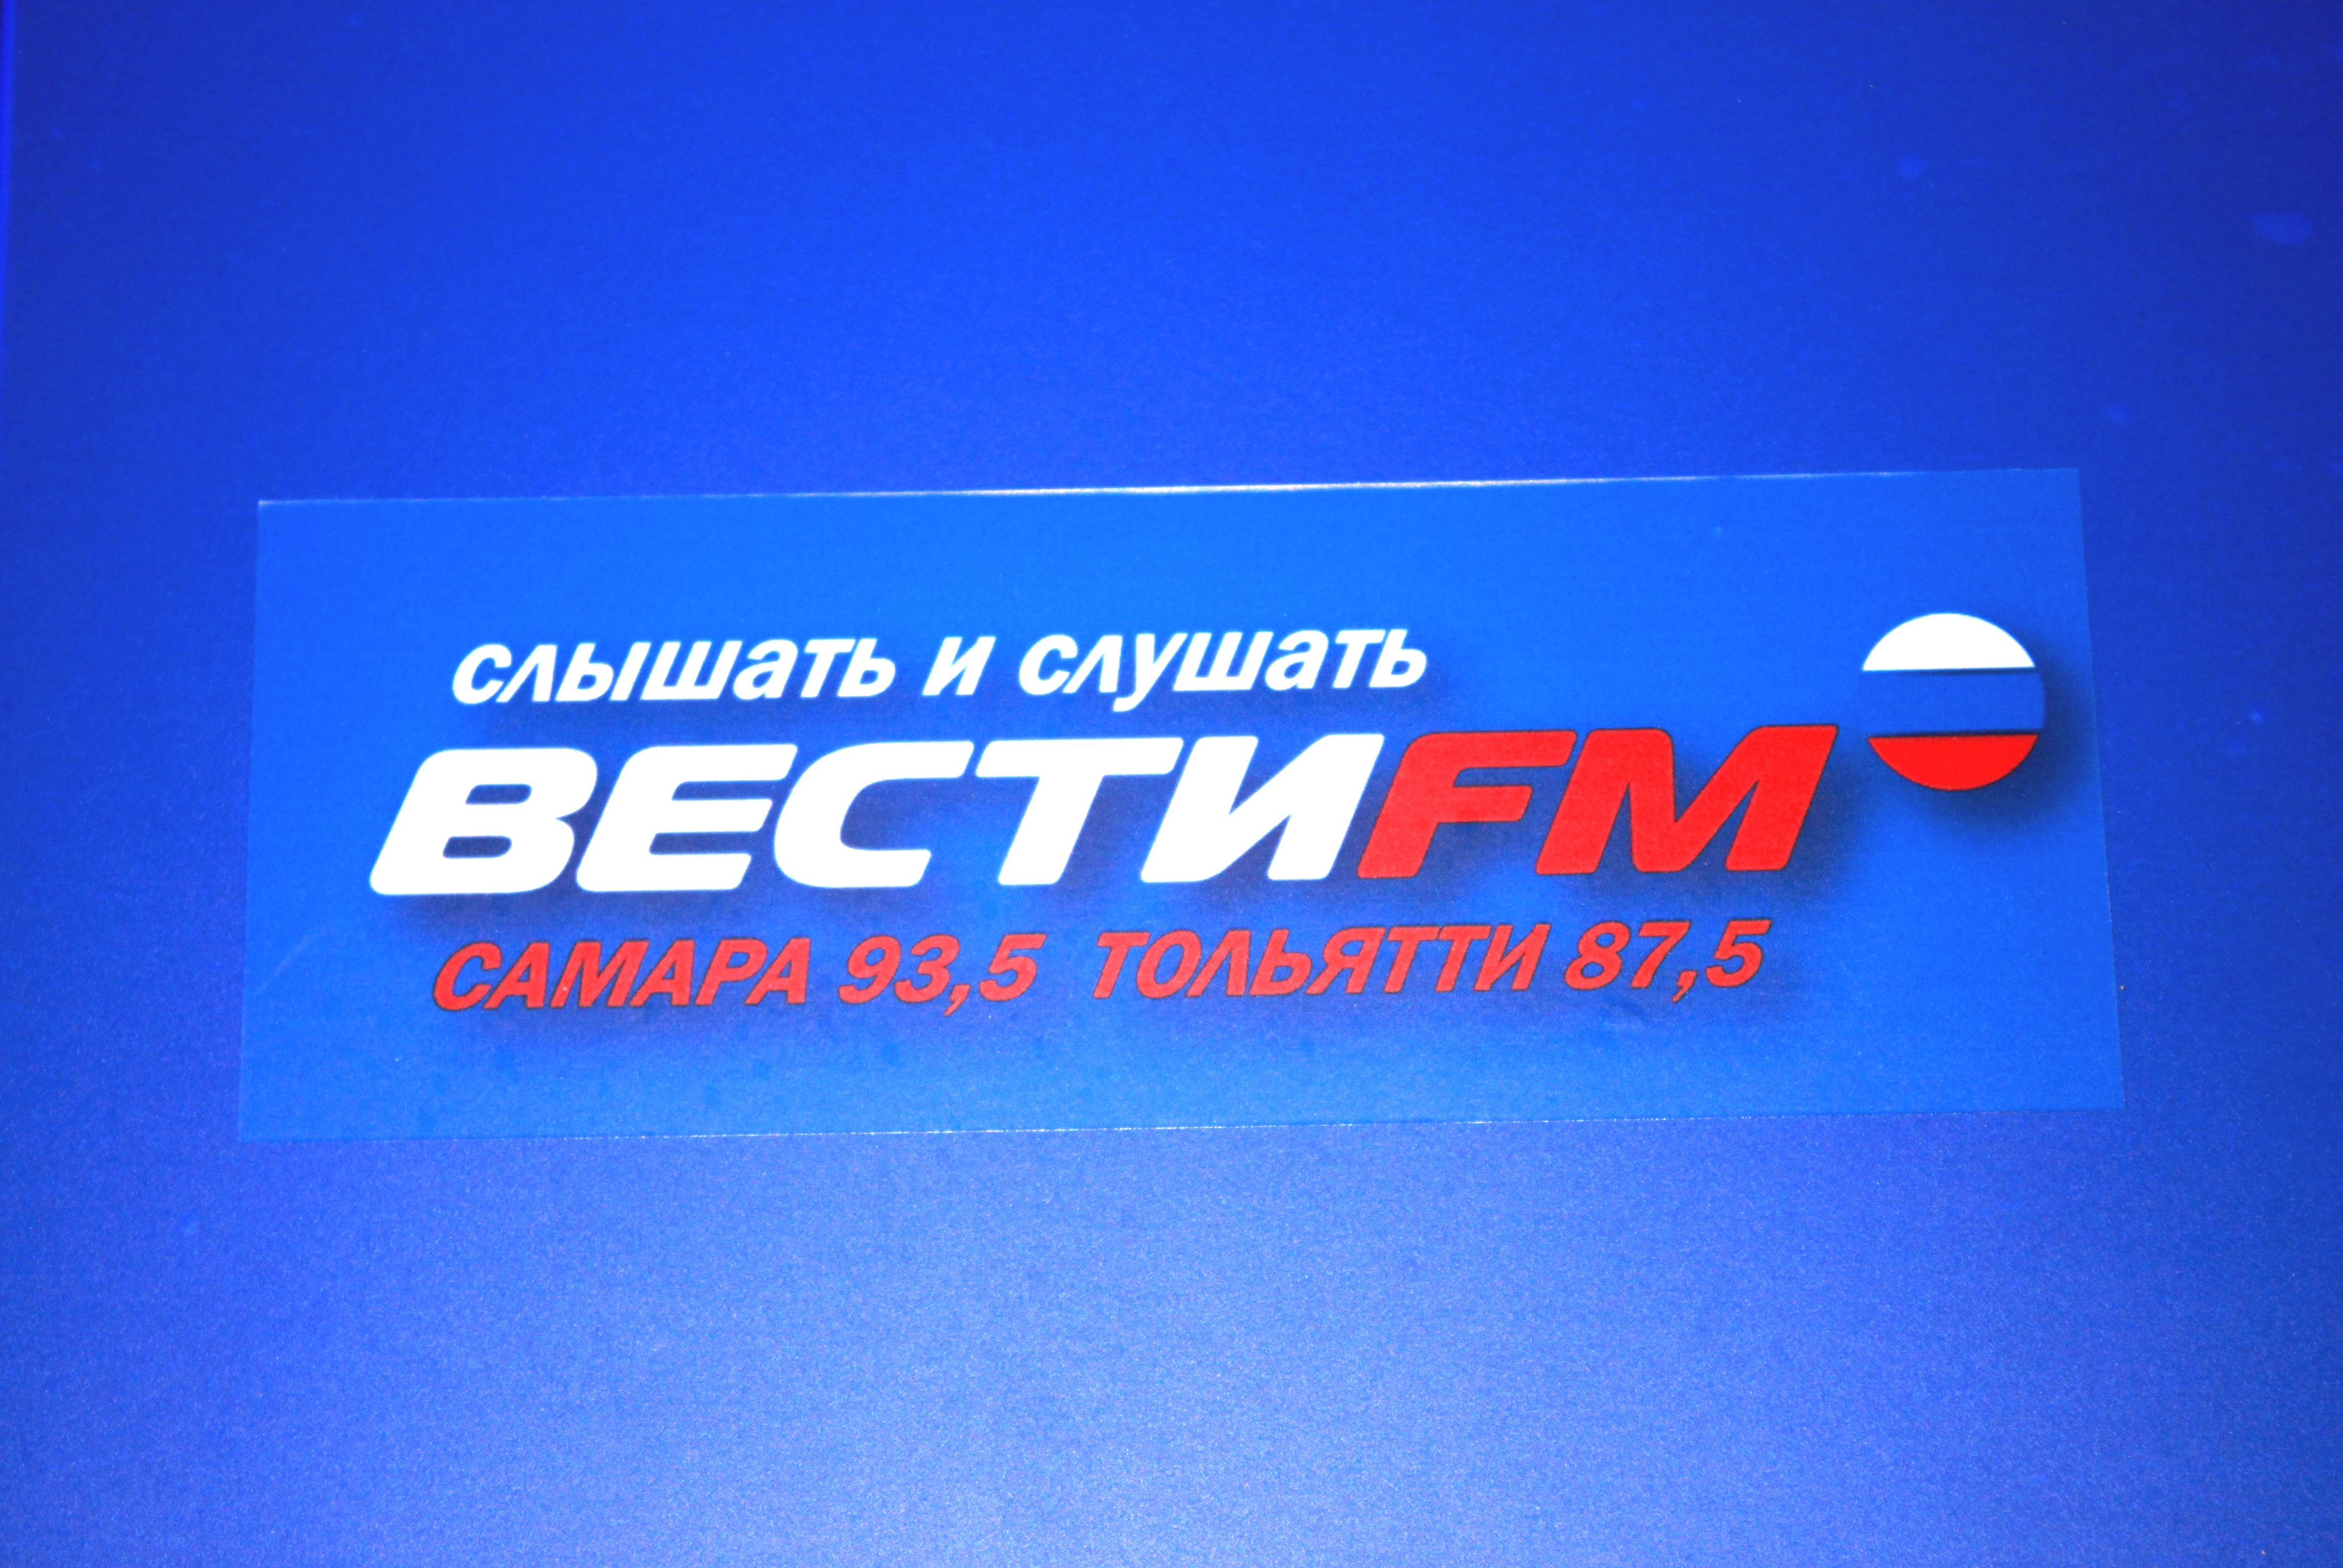 Радио вести фм архив. Вести ФМ. Вести fm логотип. Логотип радиостанции вести ФМ. Вести ФМ студия.